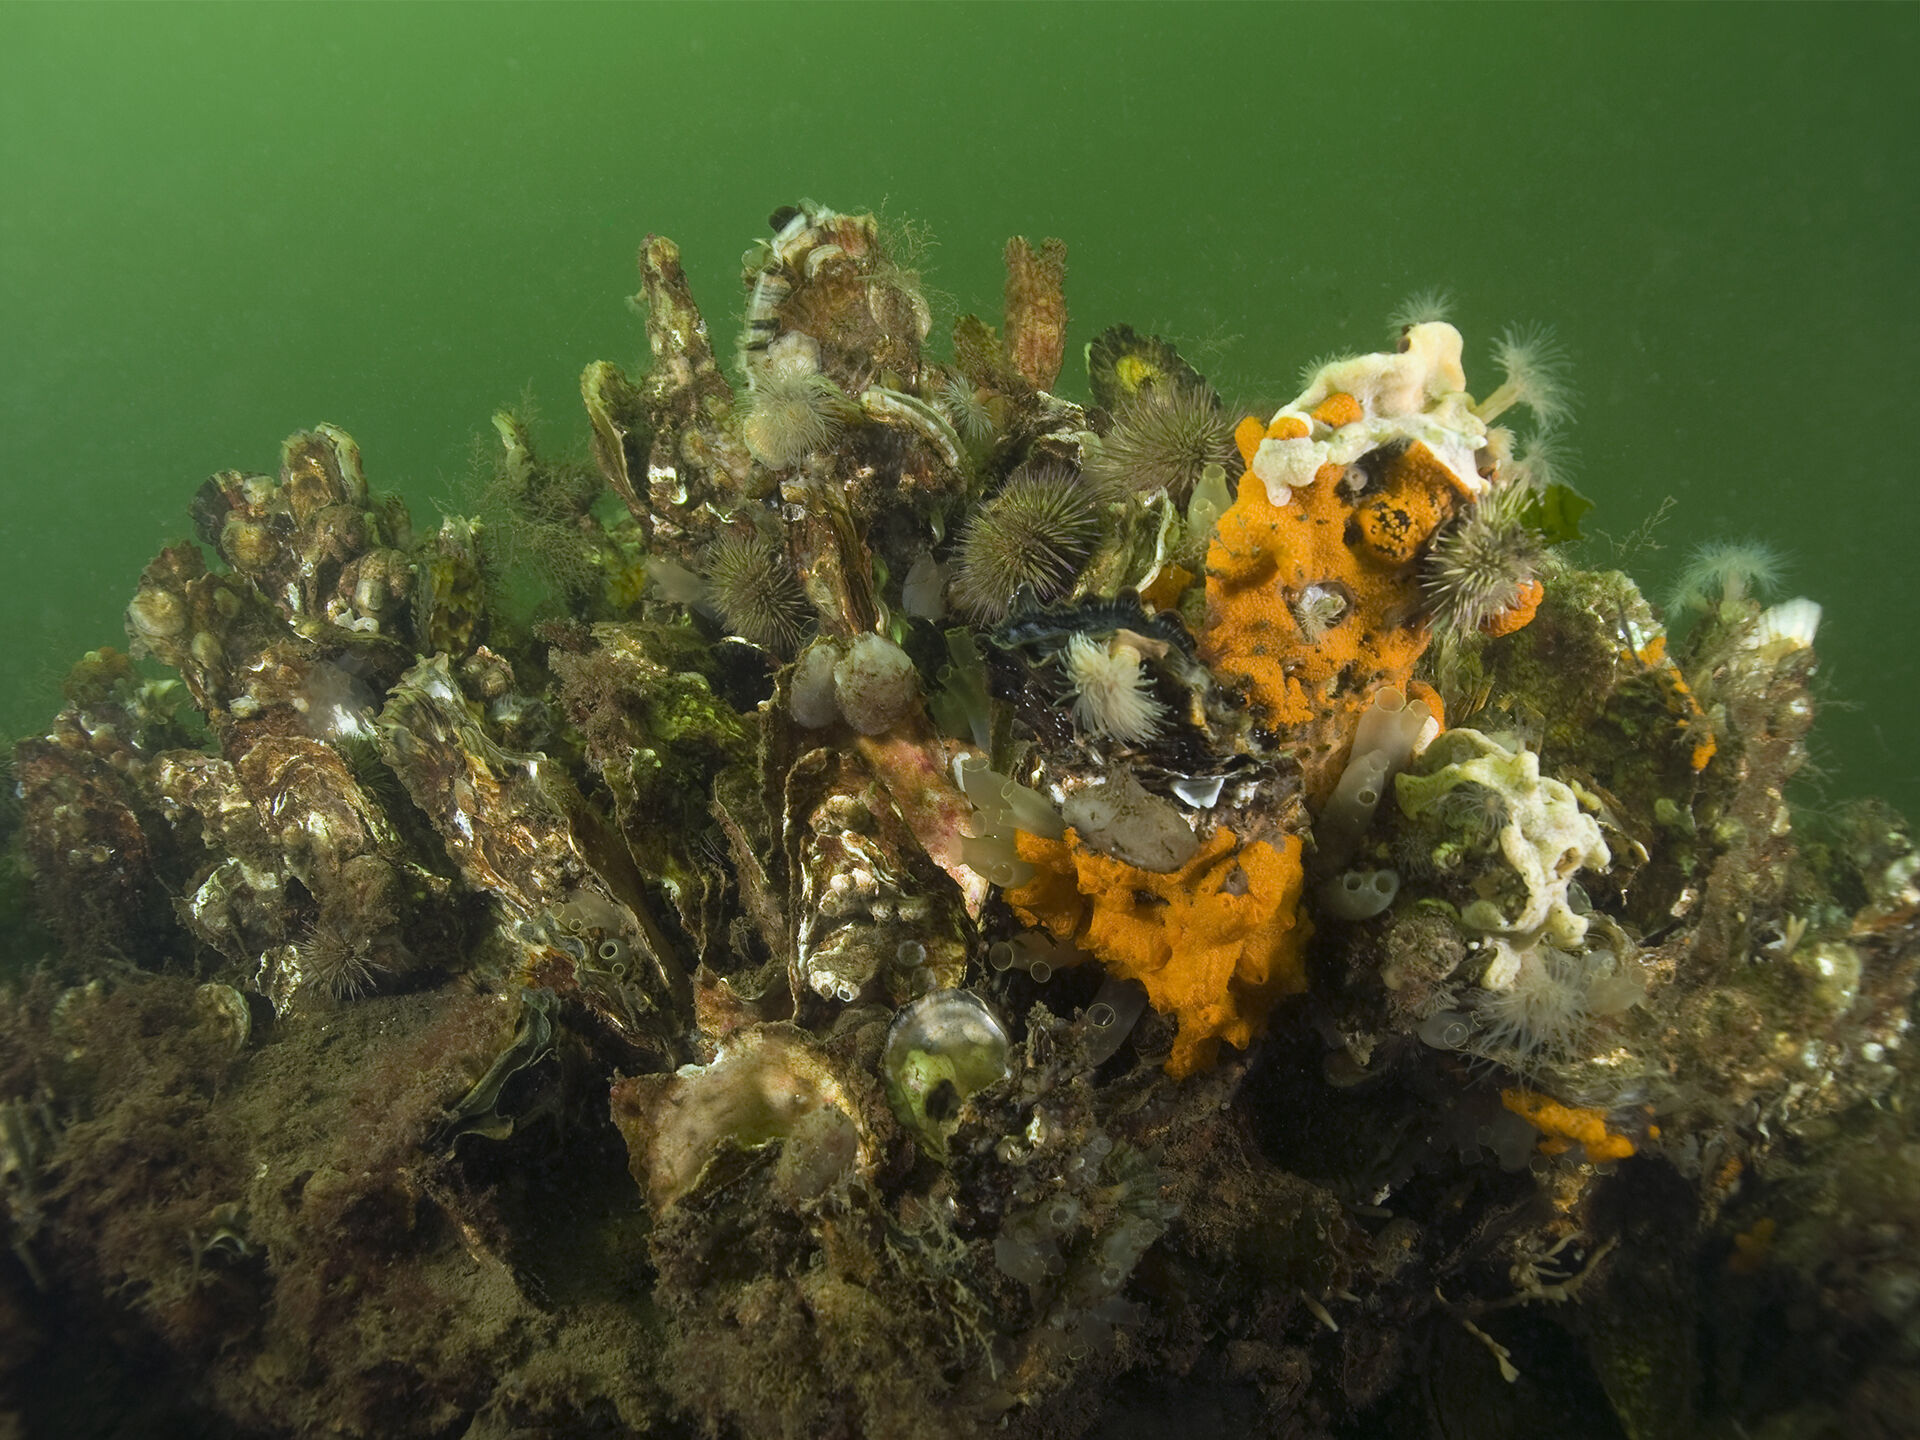 Japanse oester (Crassostrea gigas gigas) in het Nationaal Park Oosterschelde. Foto: Marion Haarsm